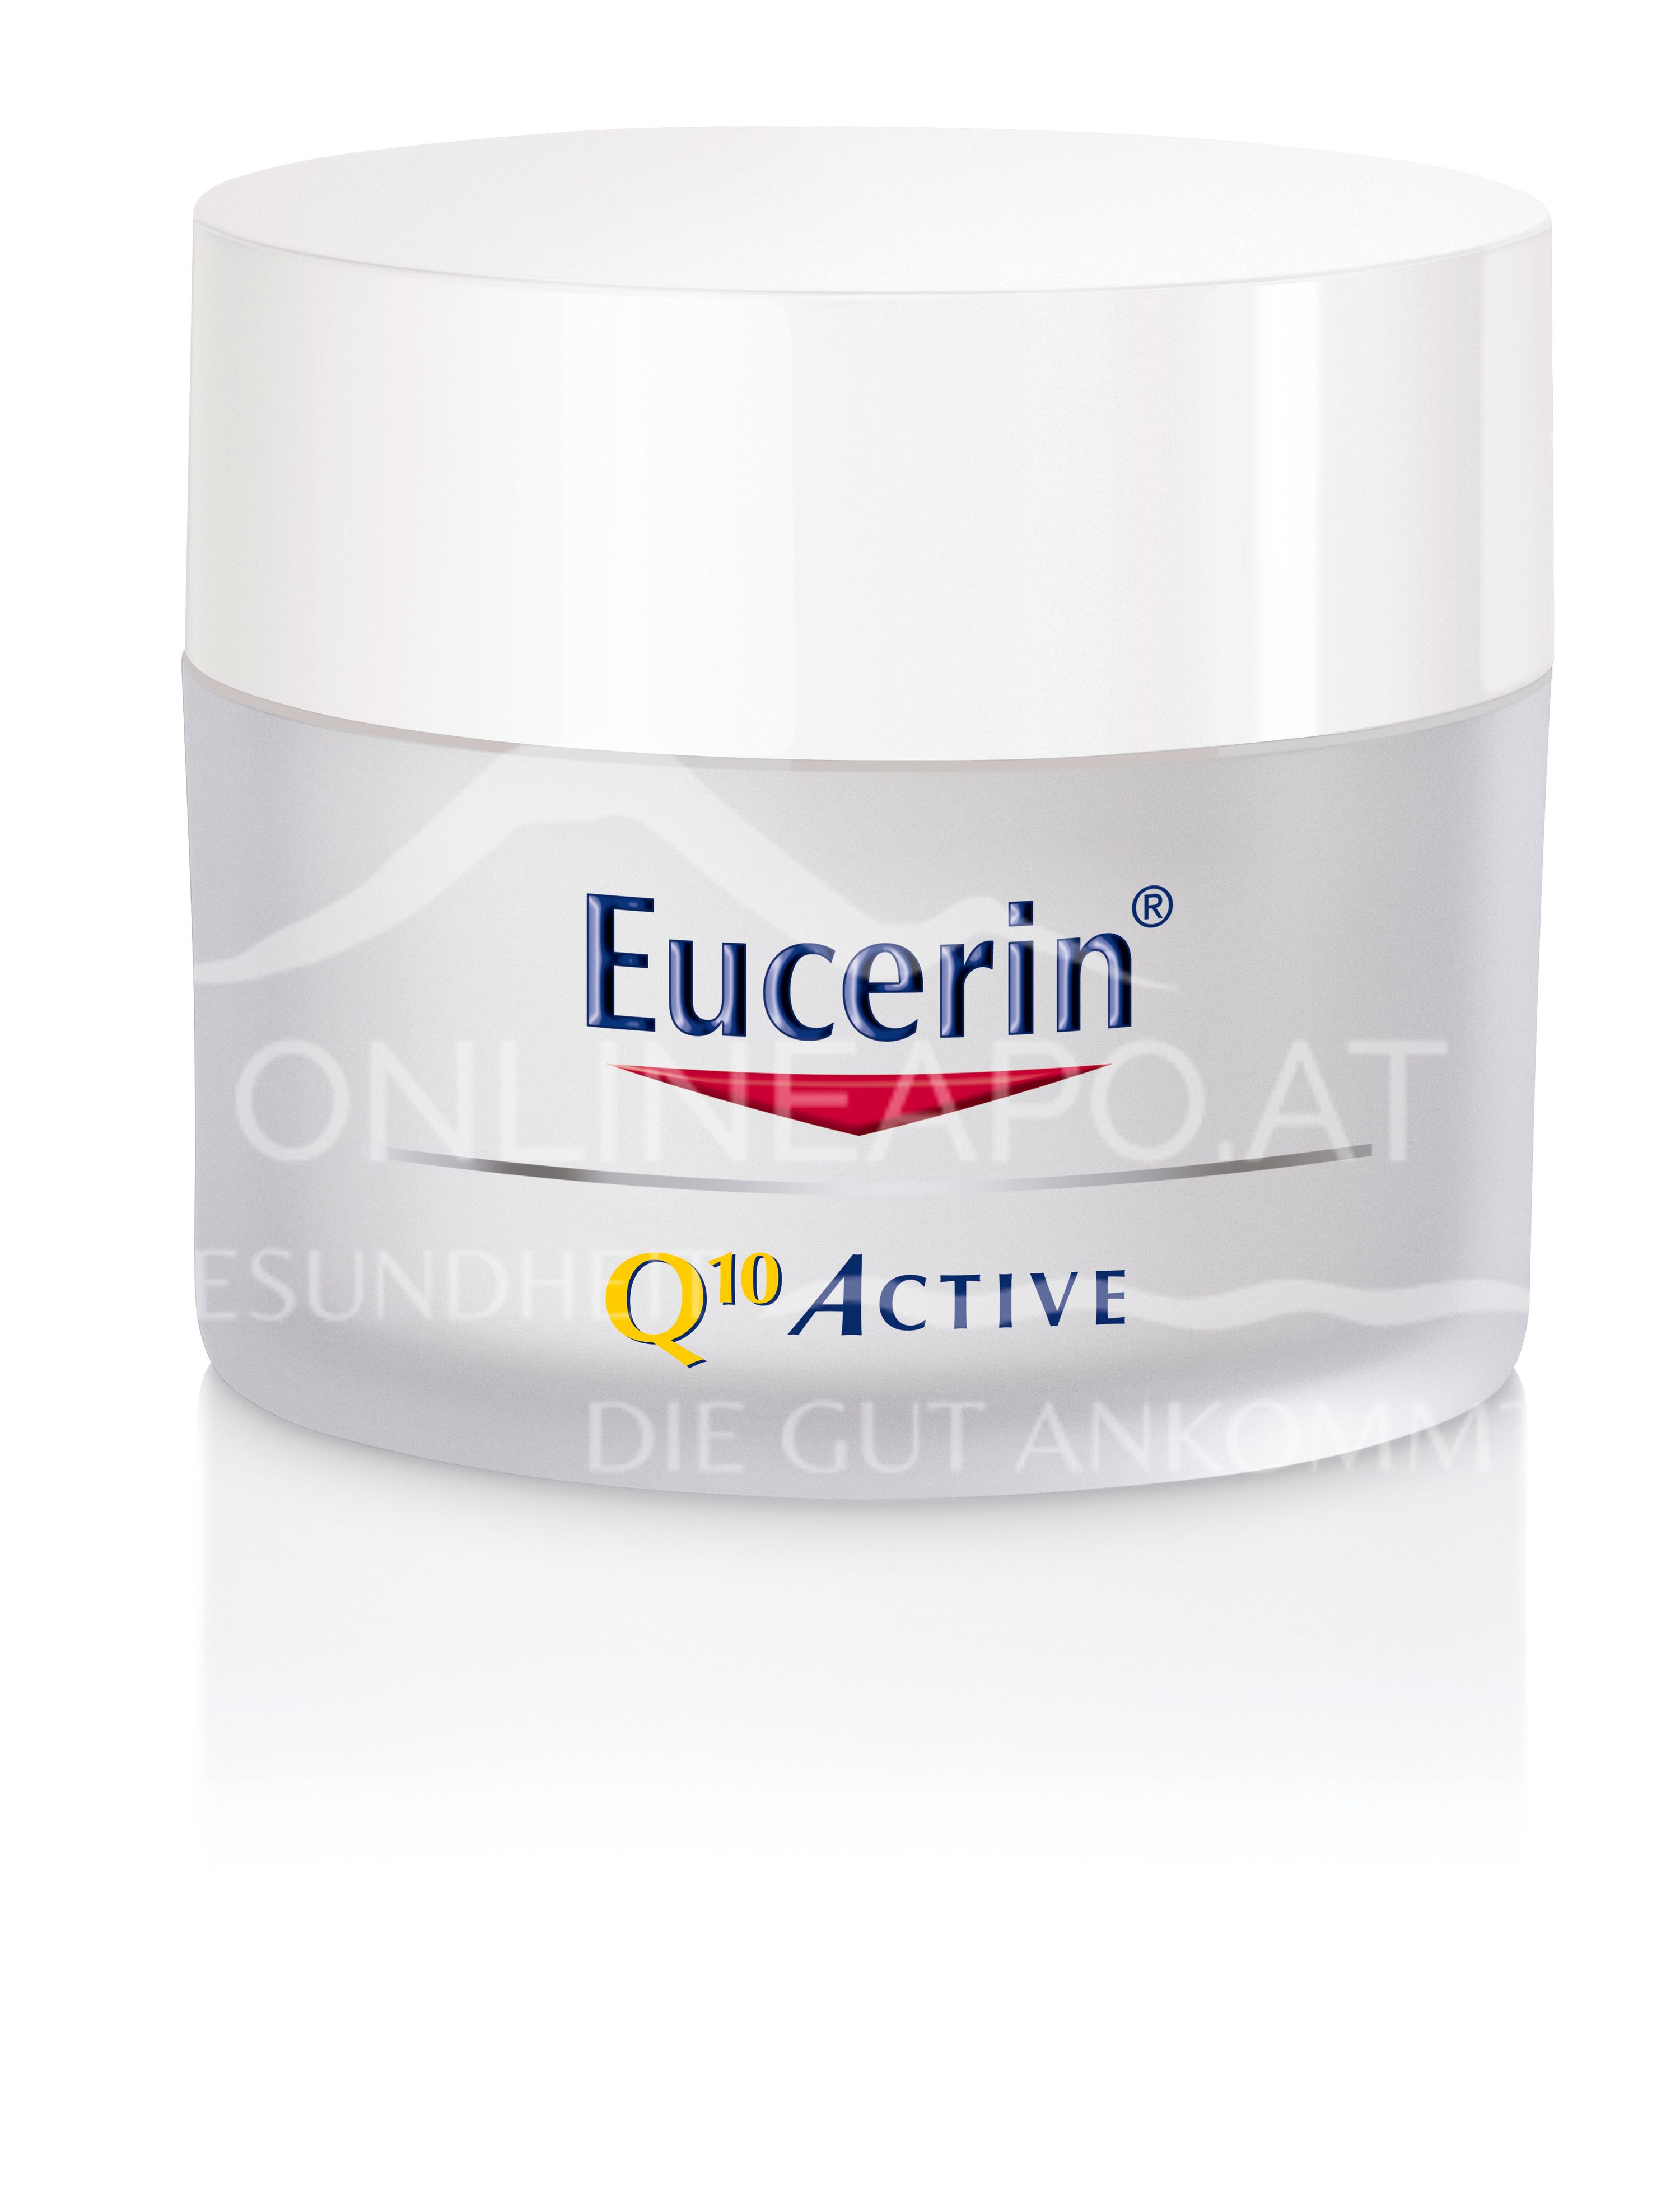 Eucerin® Q10 ACTIVE ANTI-FALTEN Tagespflege für trockene Haut